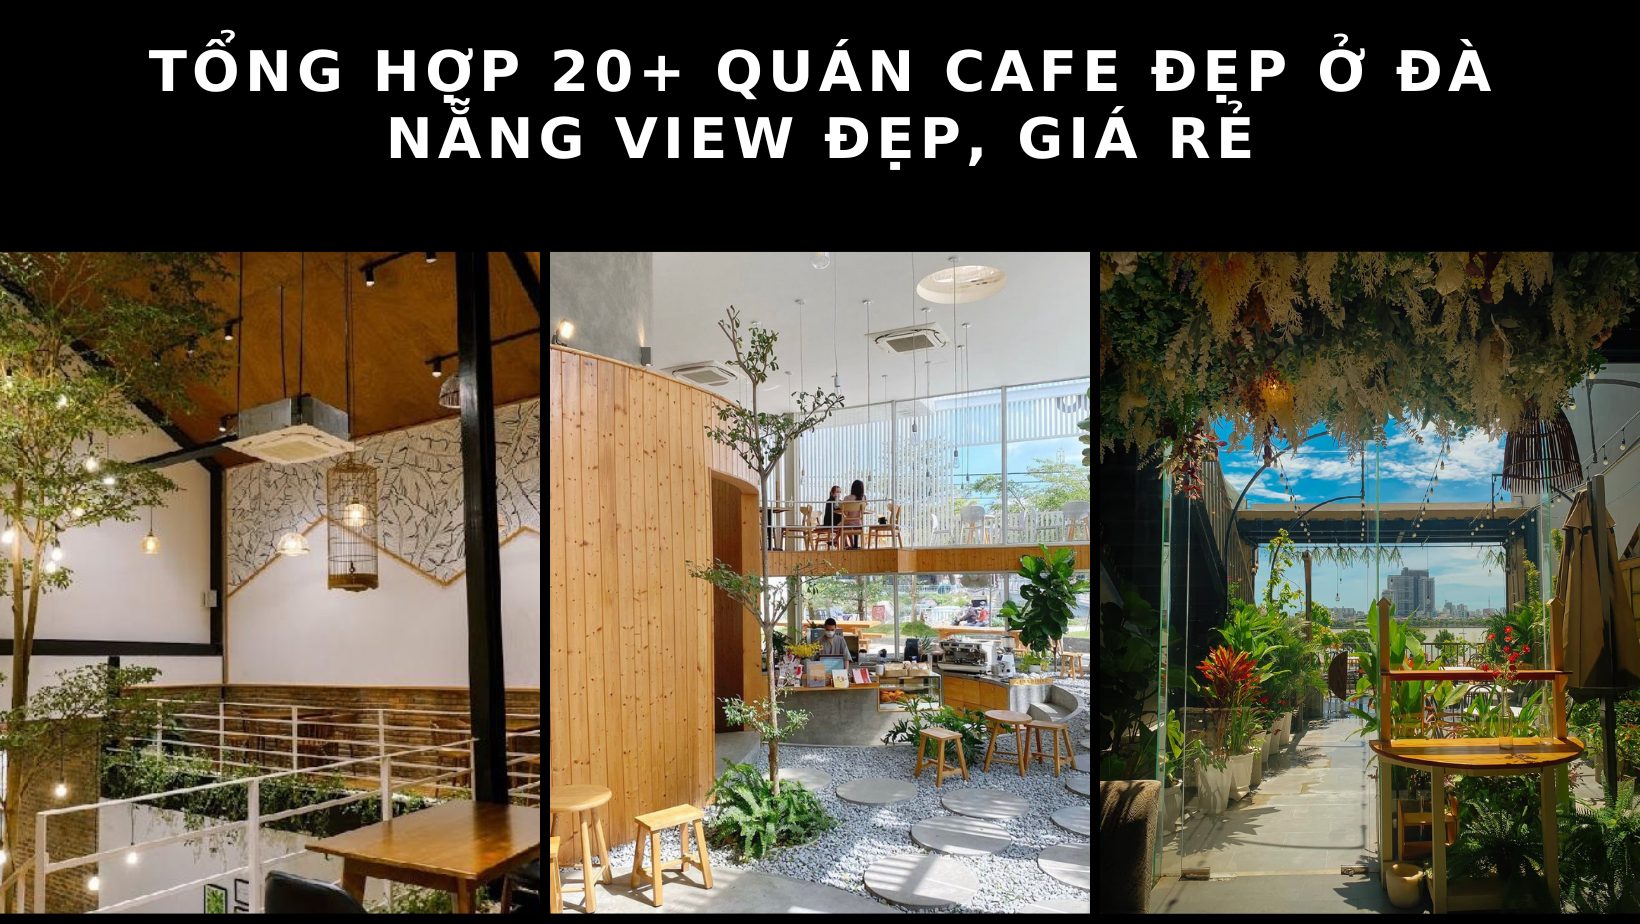 Tổng hợp 20+ quán cafe đẹp ở Đà Nẵng view đẹp, giá rẻ